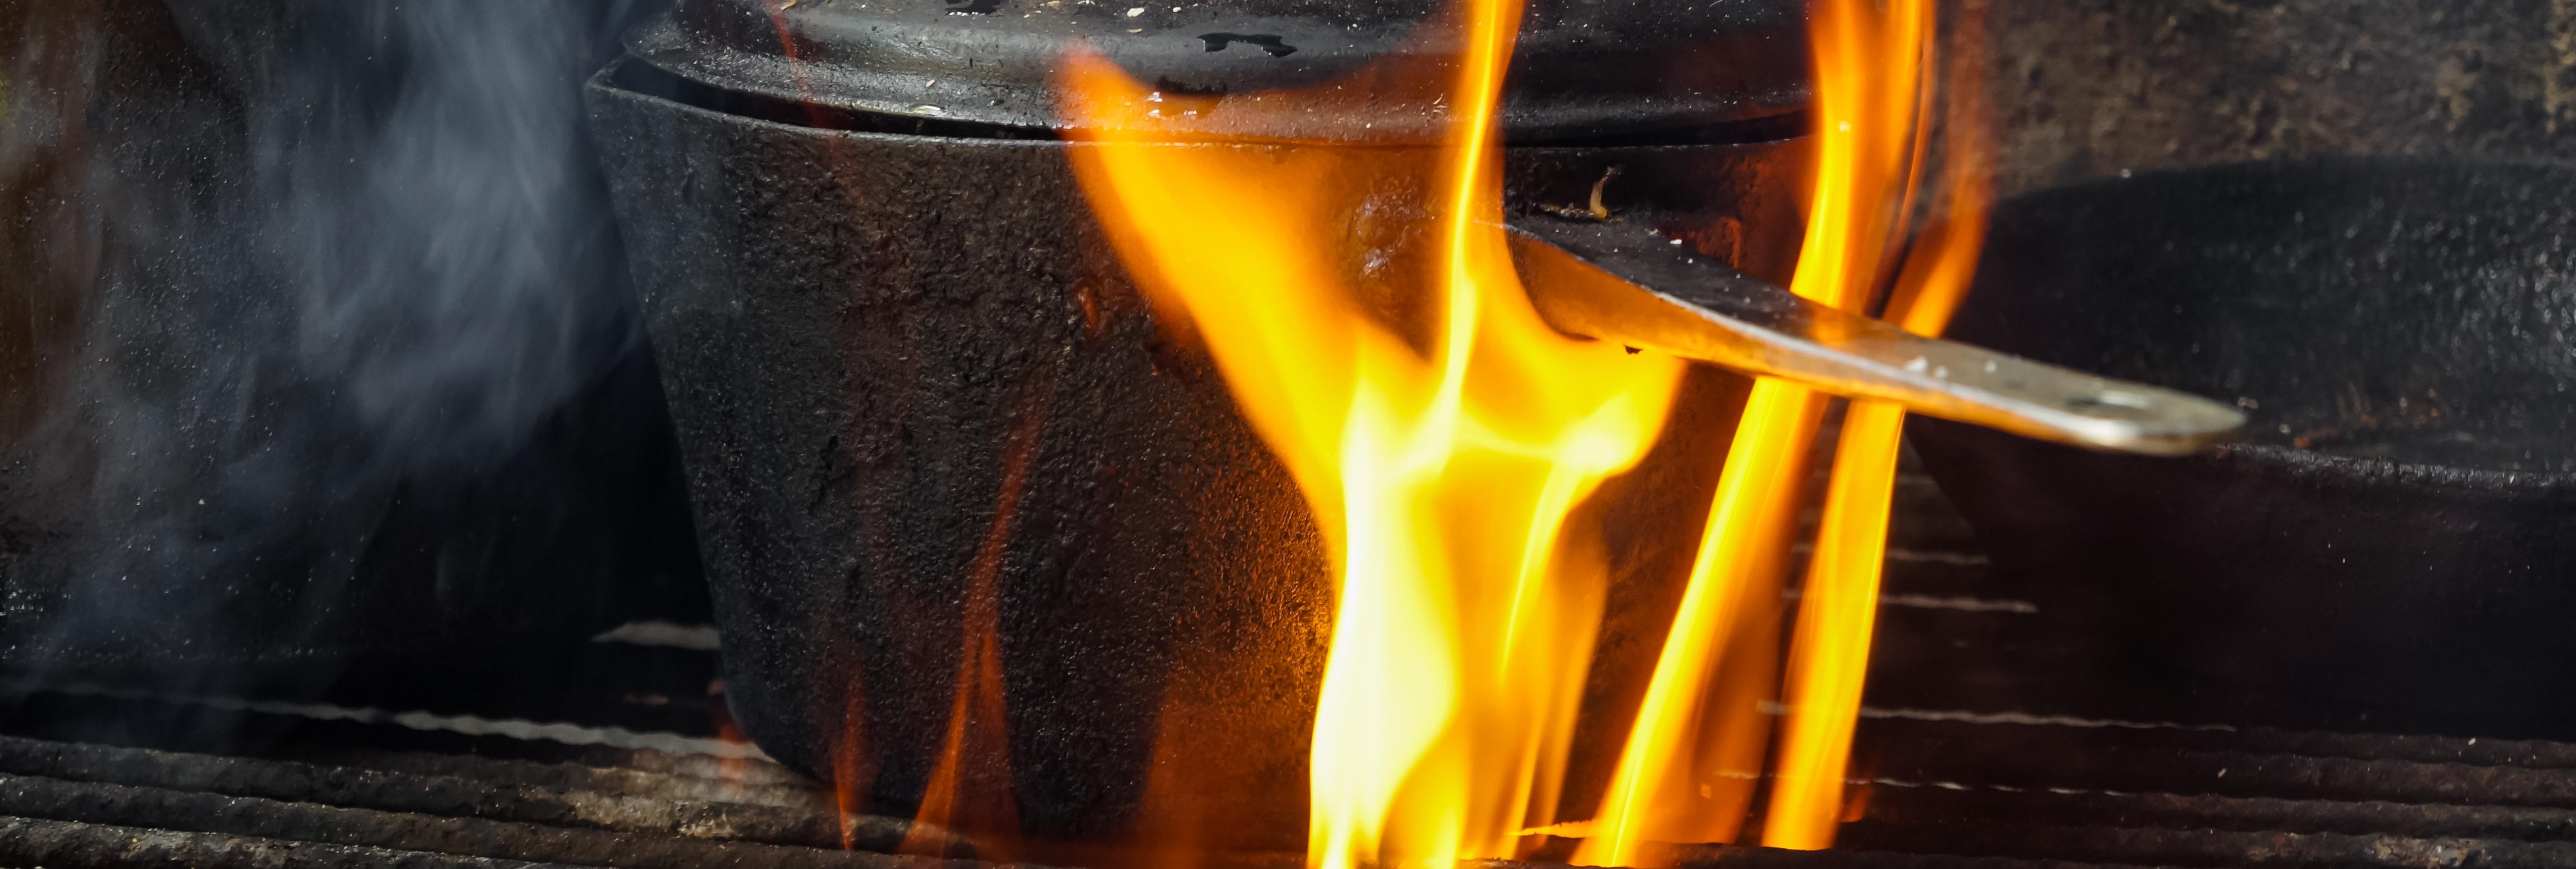 Mentega yang dipanaskan di wajan meleleh karena panas merupakan contoh perpindahan panas dengan cara